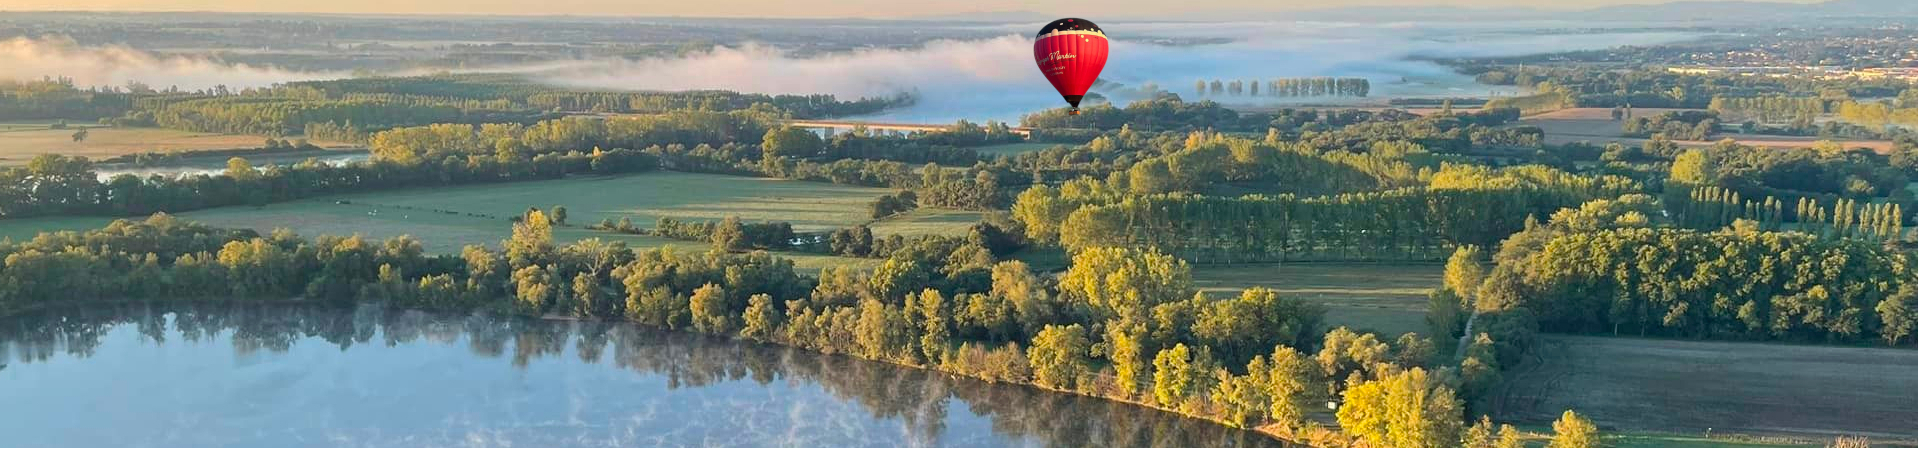 Vol d'une montgolfière au dessus d'un étang